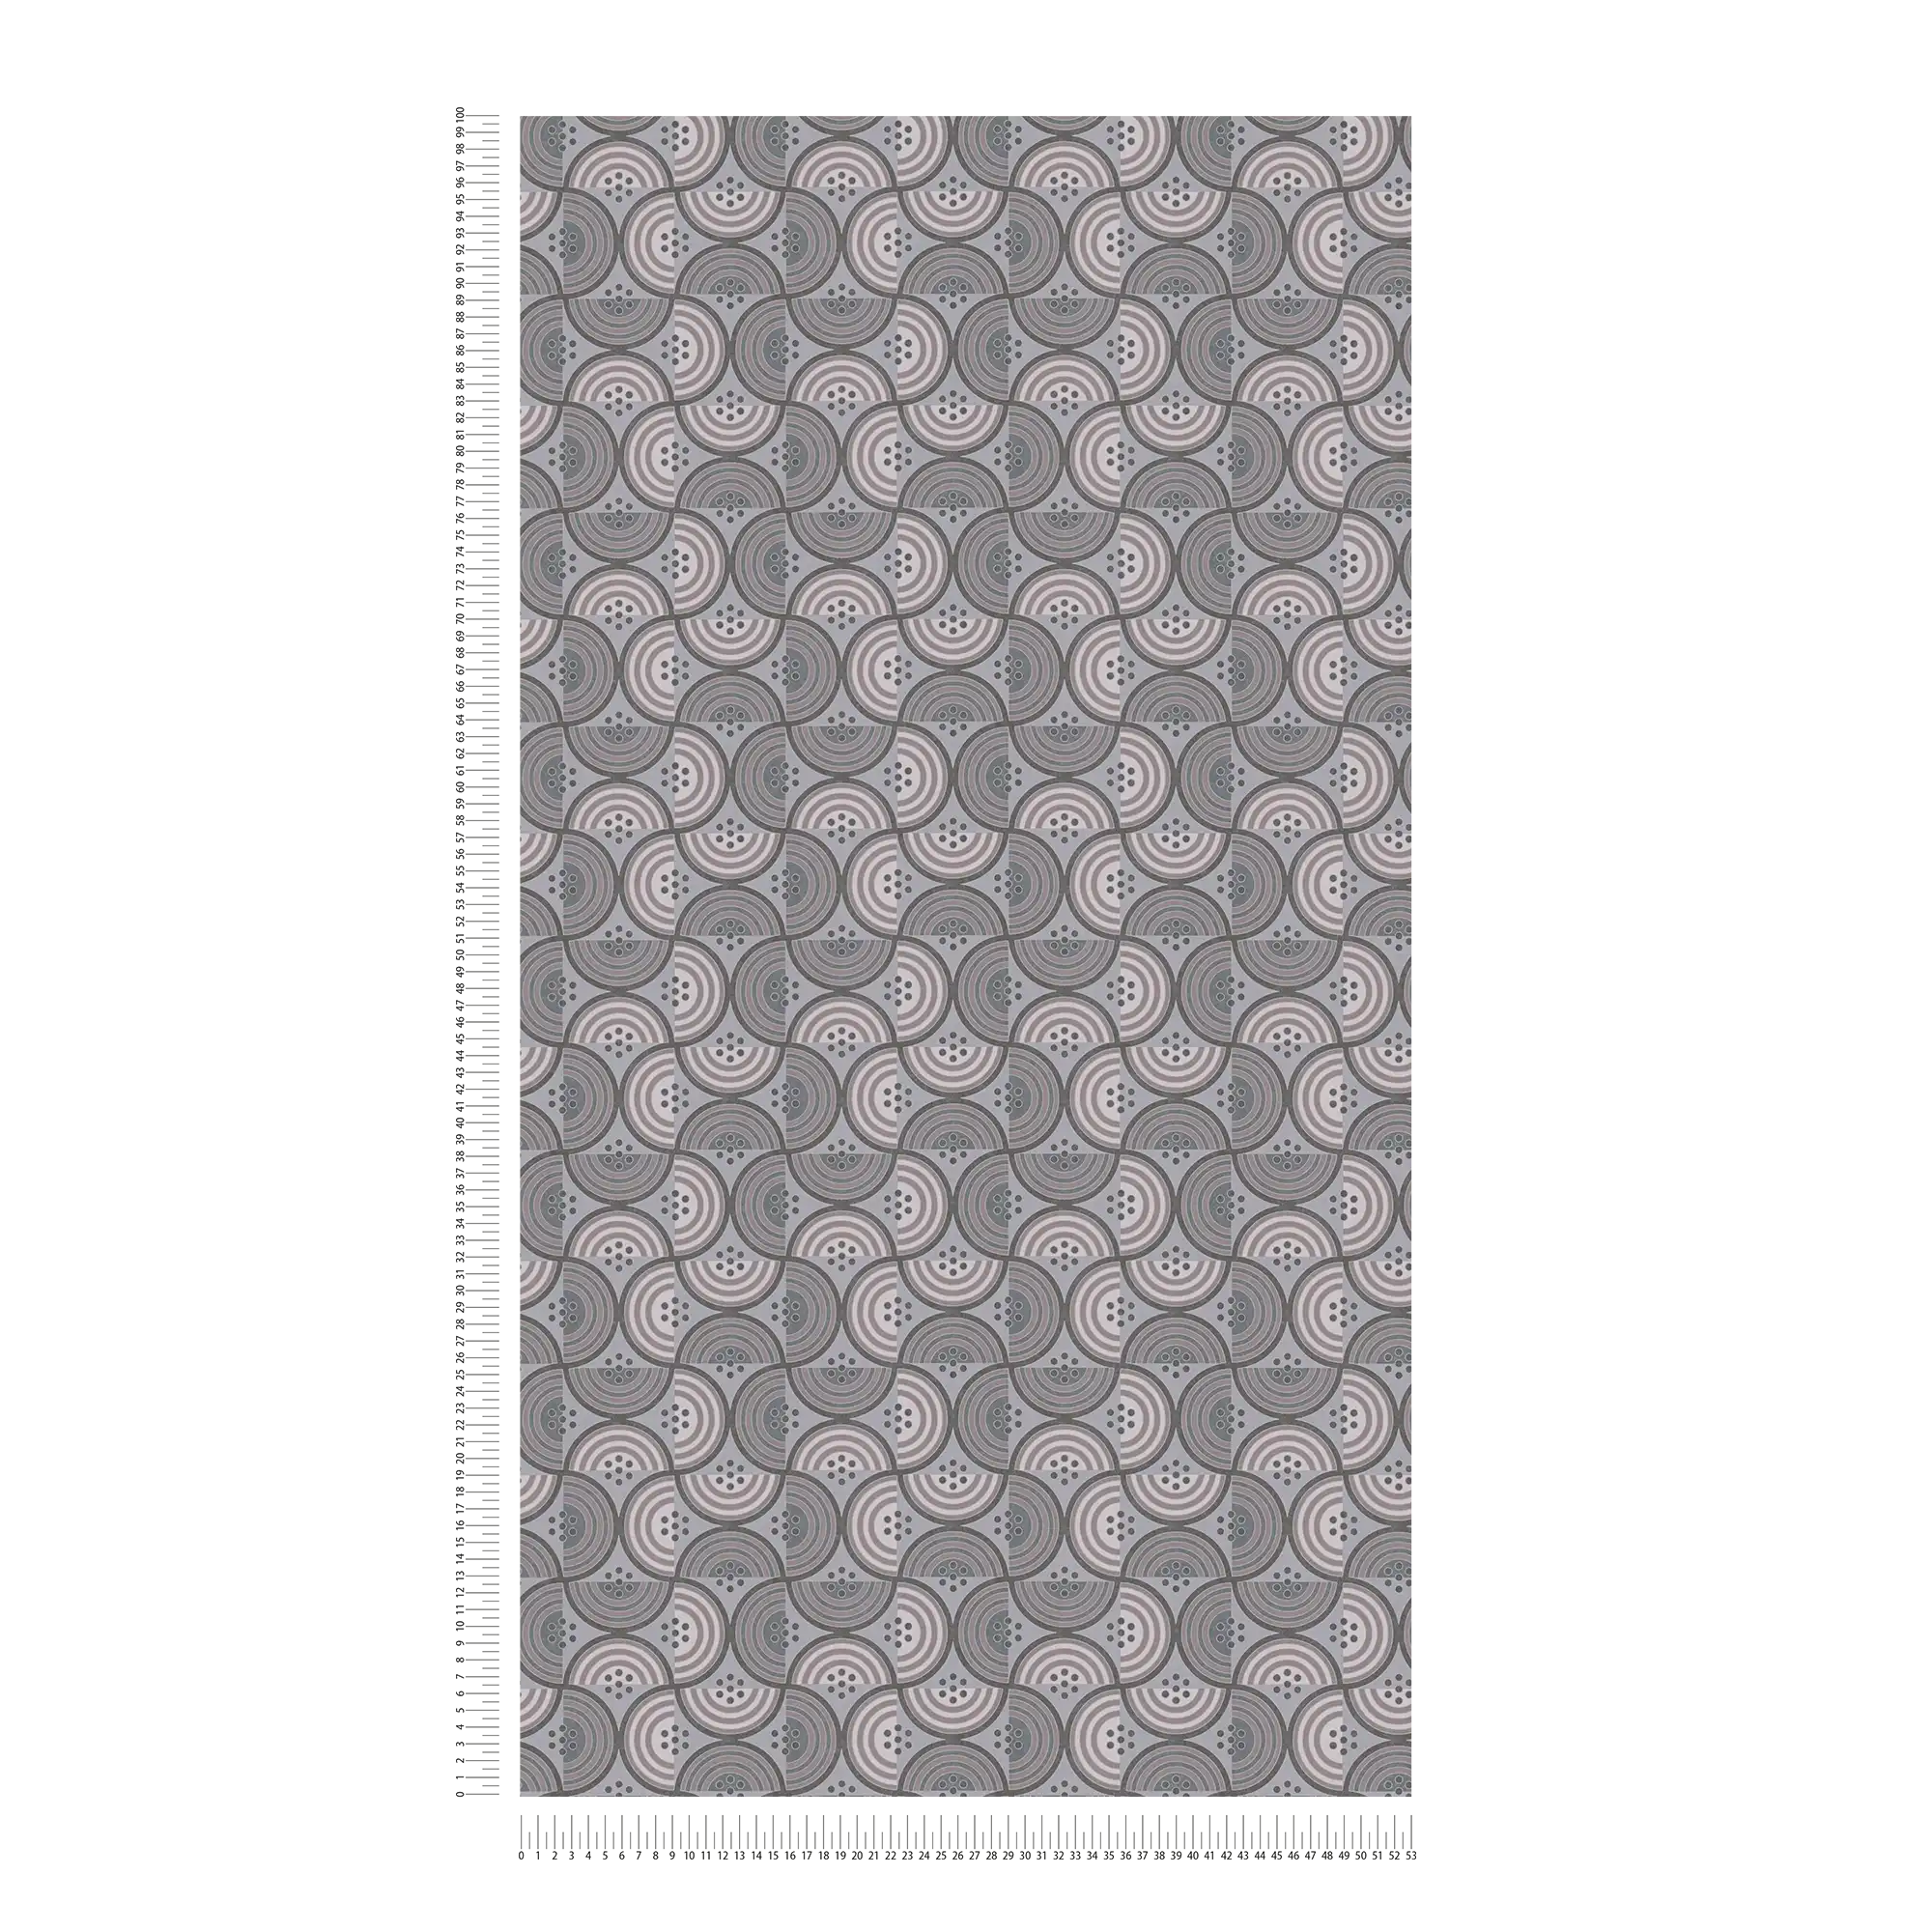             Grafische Tapete mit Punkt- & Halbkreismuster – Taupe, Grau, Creme
        